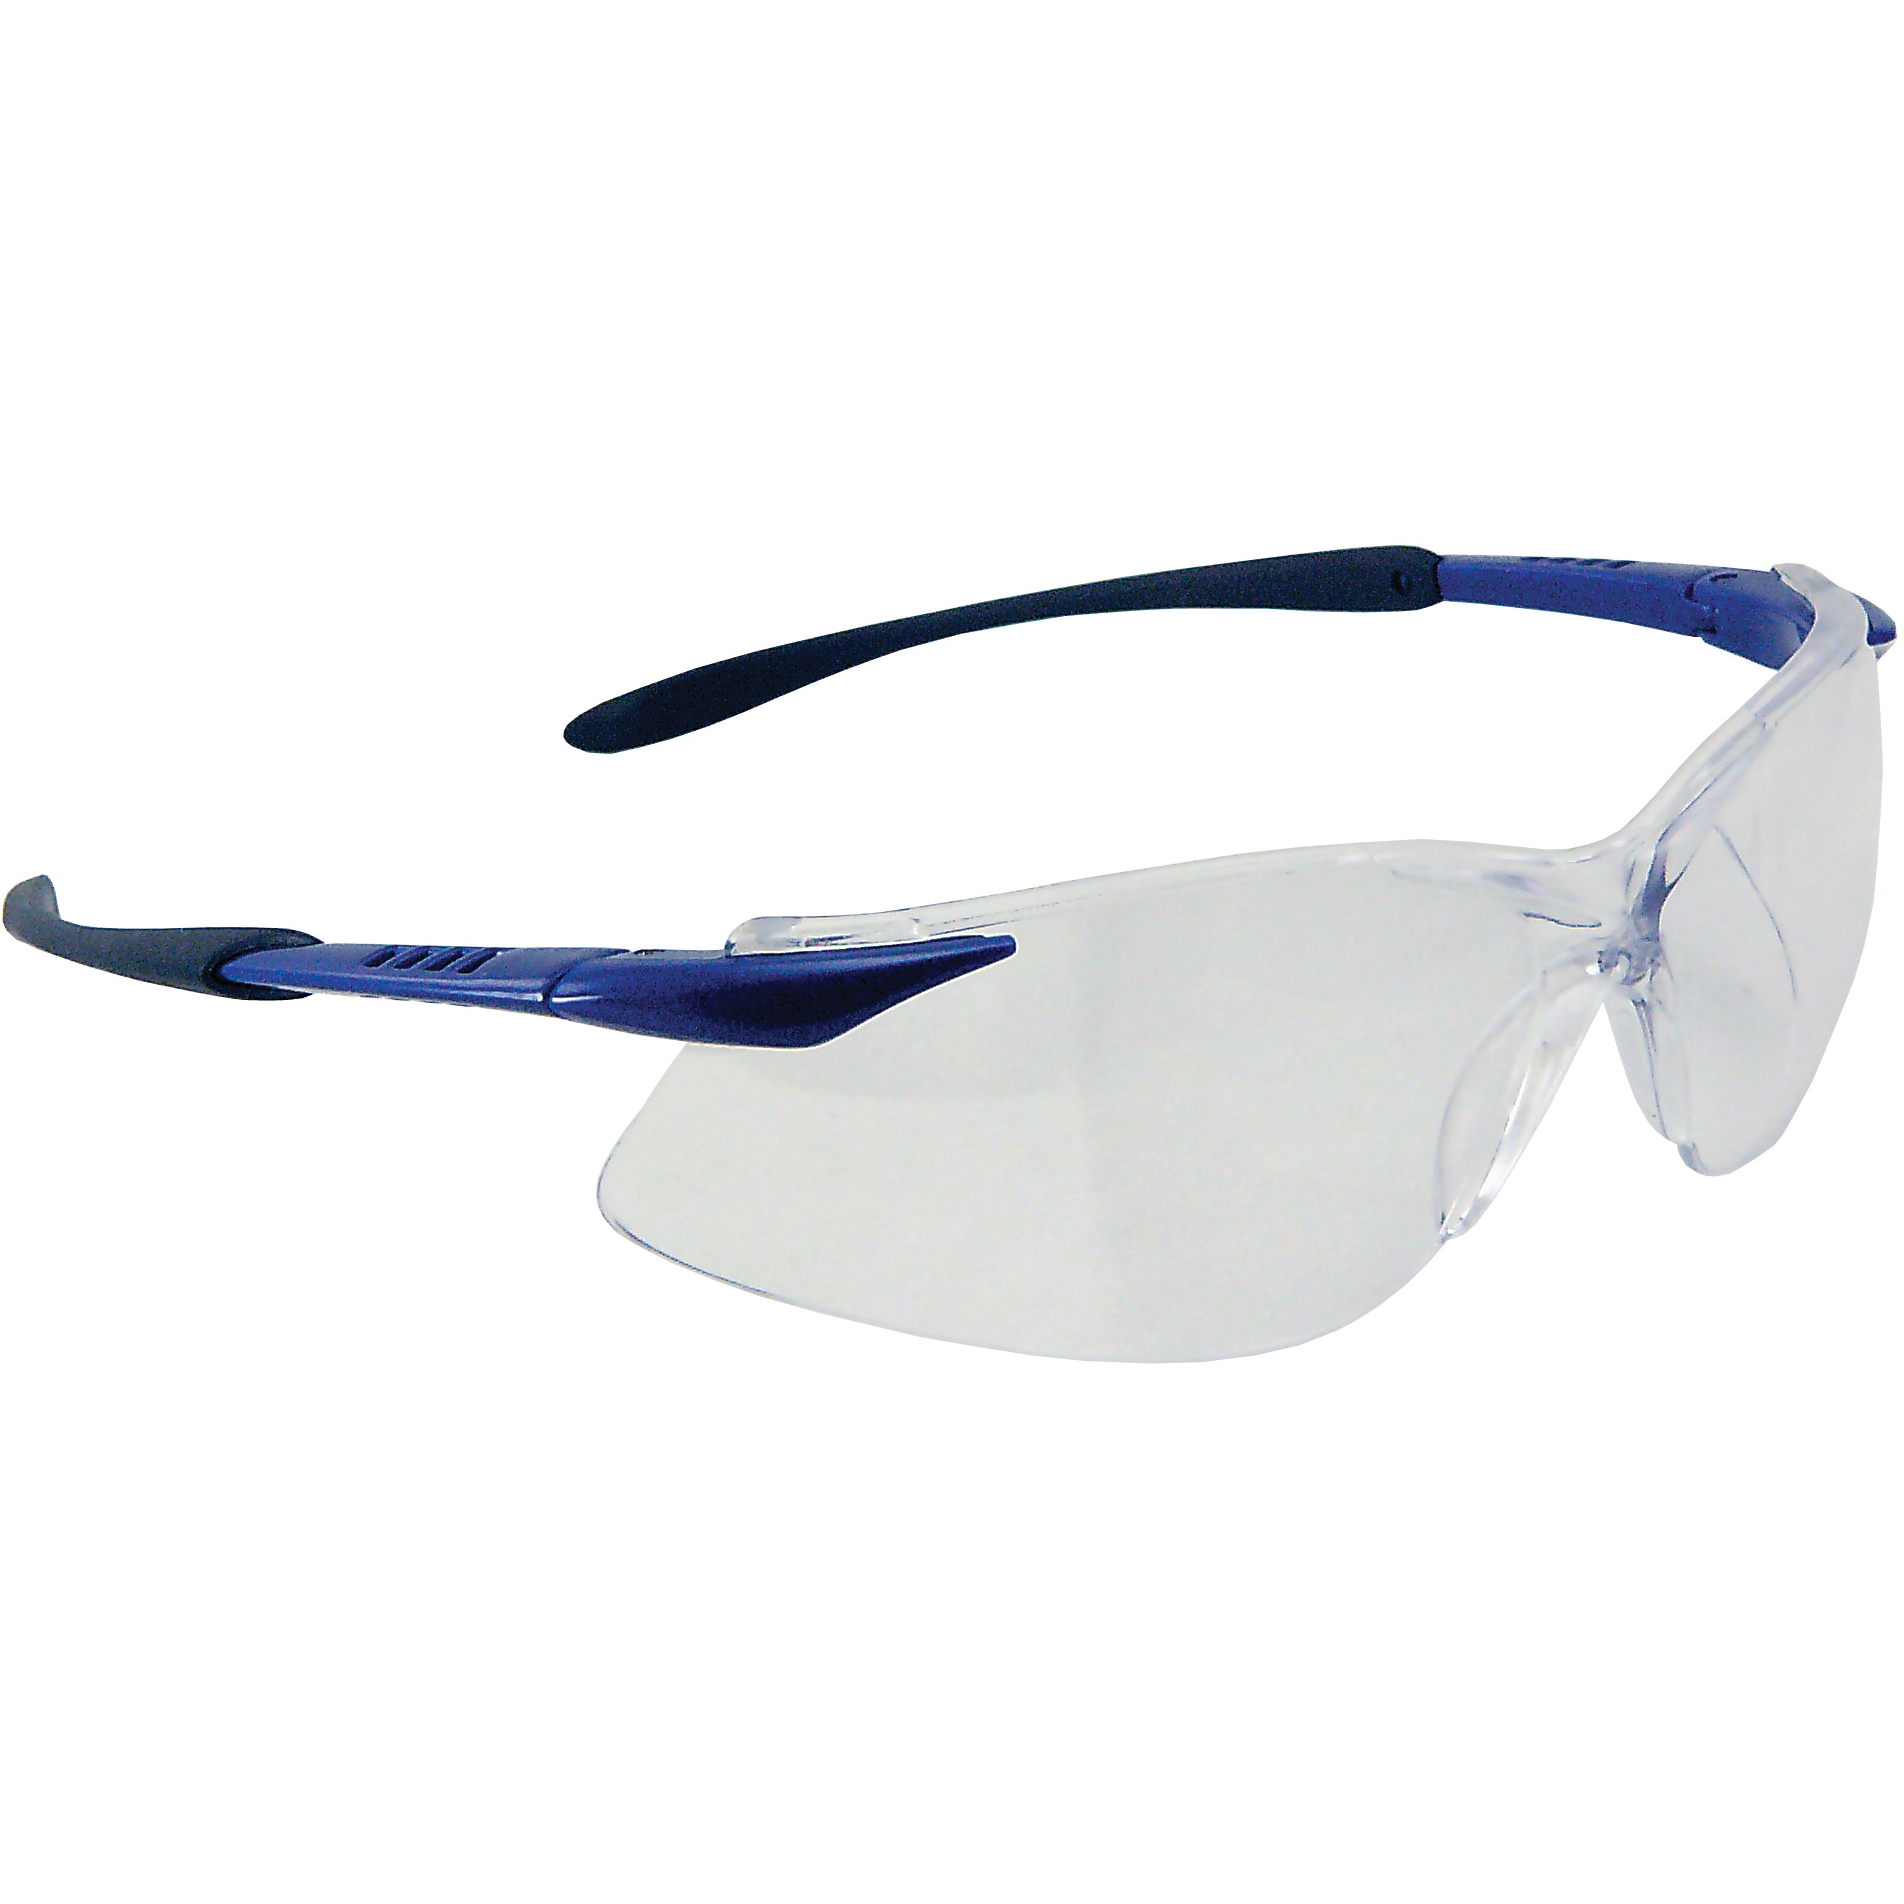 Crest Safety Glasses, Black/Blue Frame, Fog Free Clear Lens